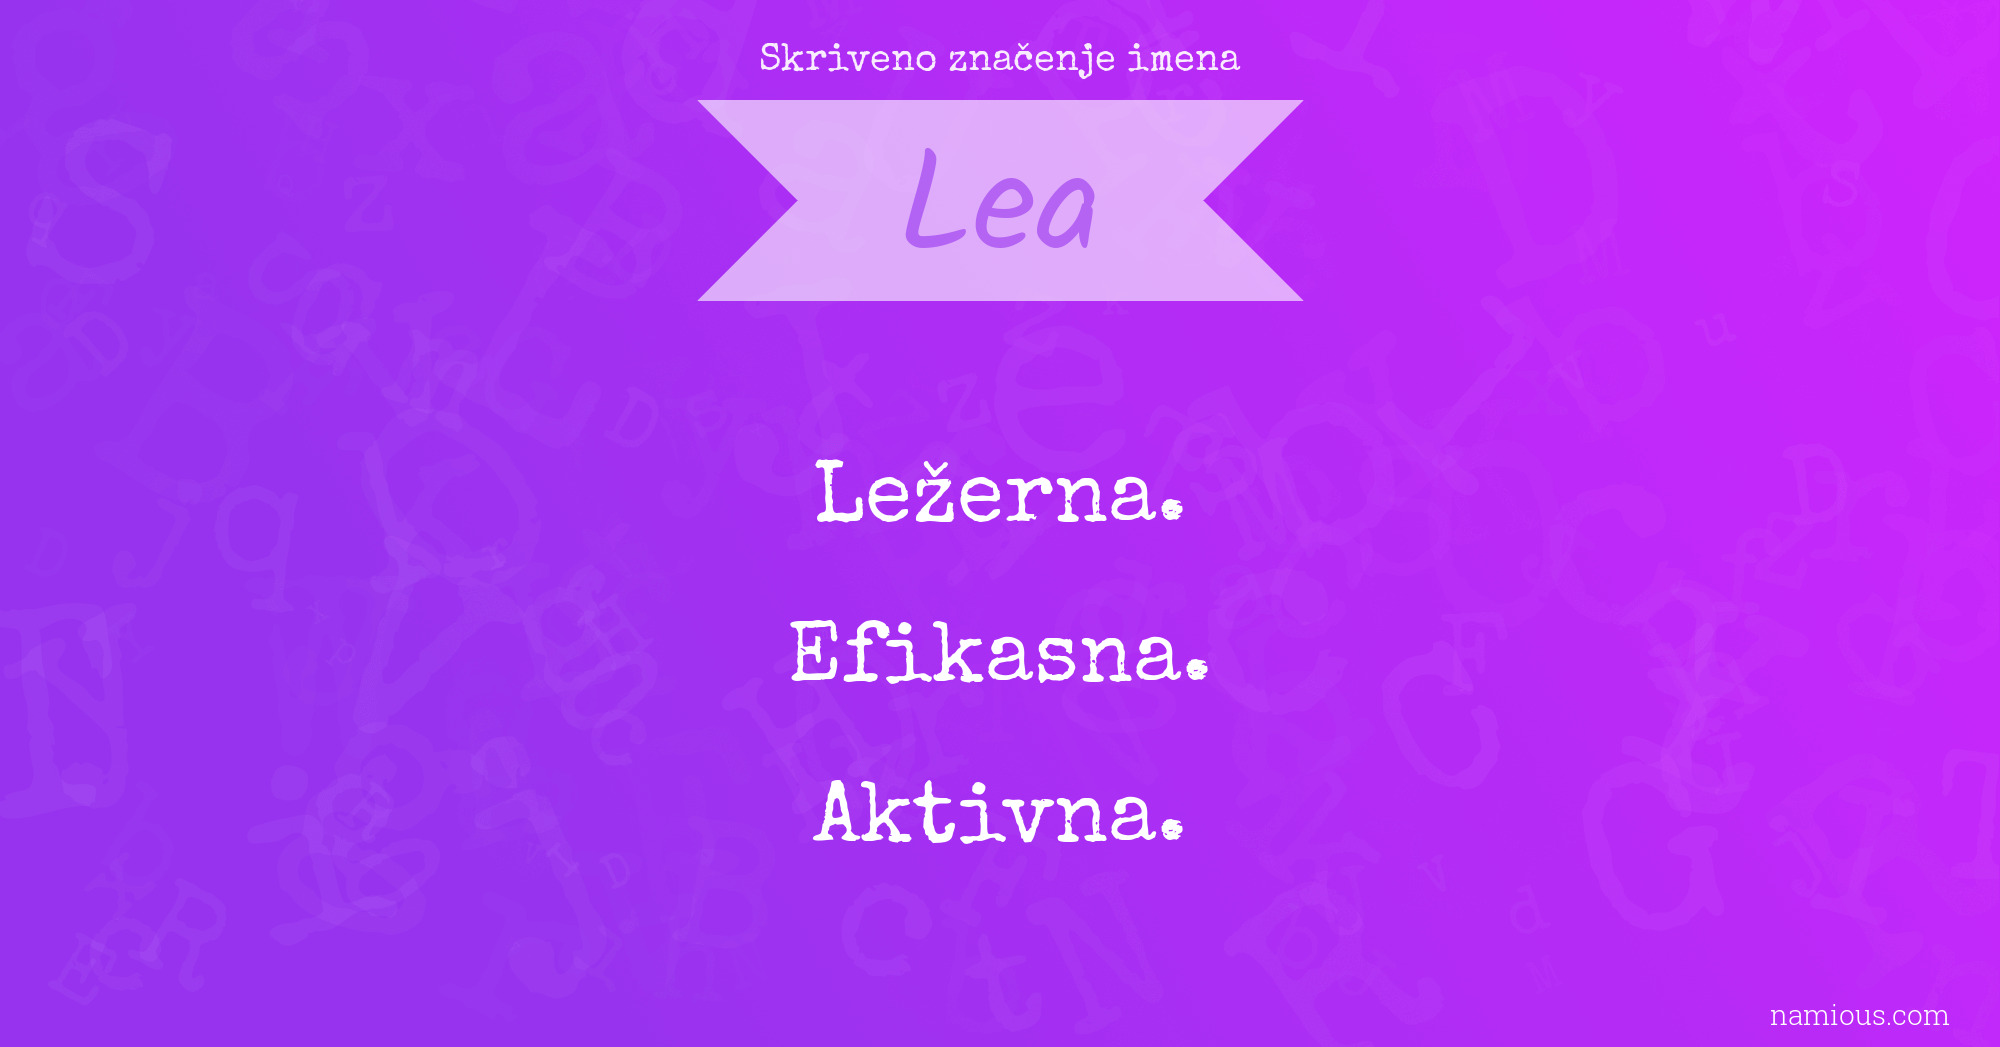 Skriveno značenje imena Lea